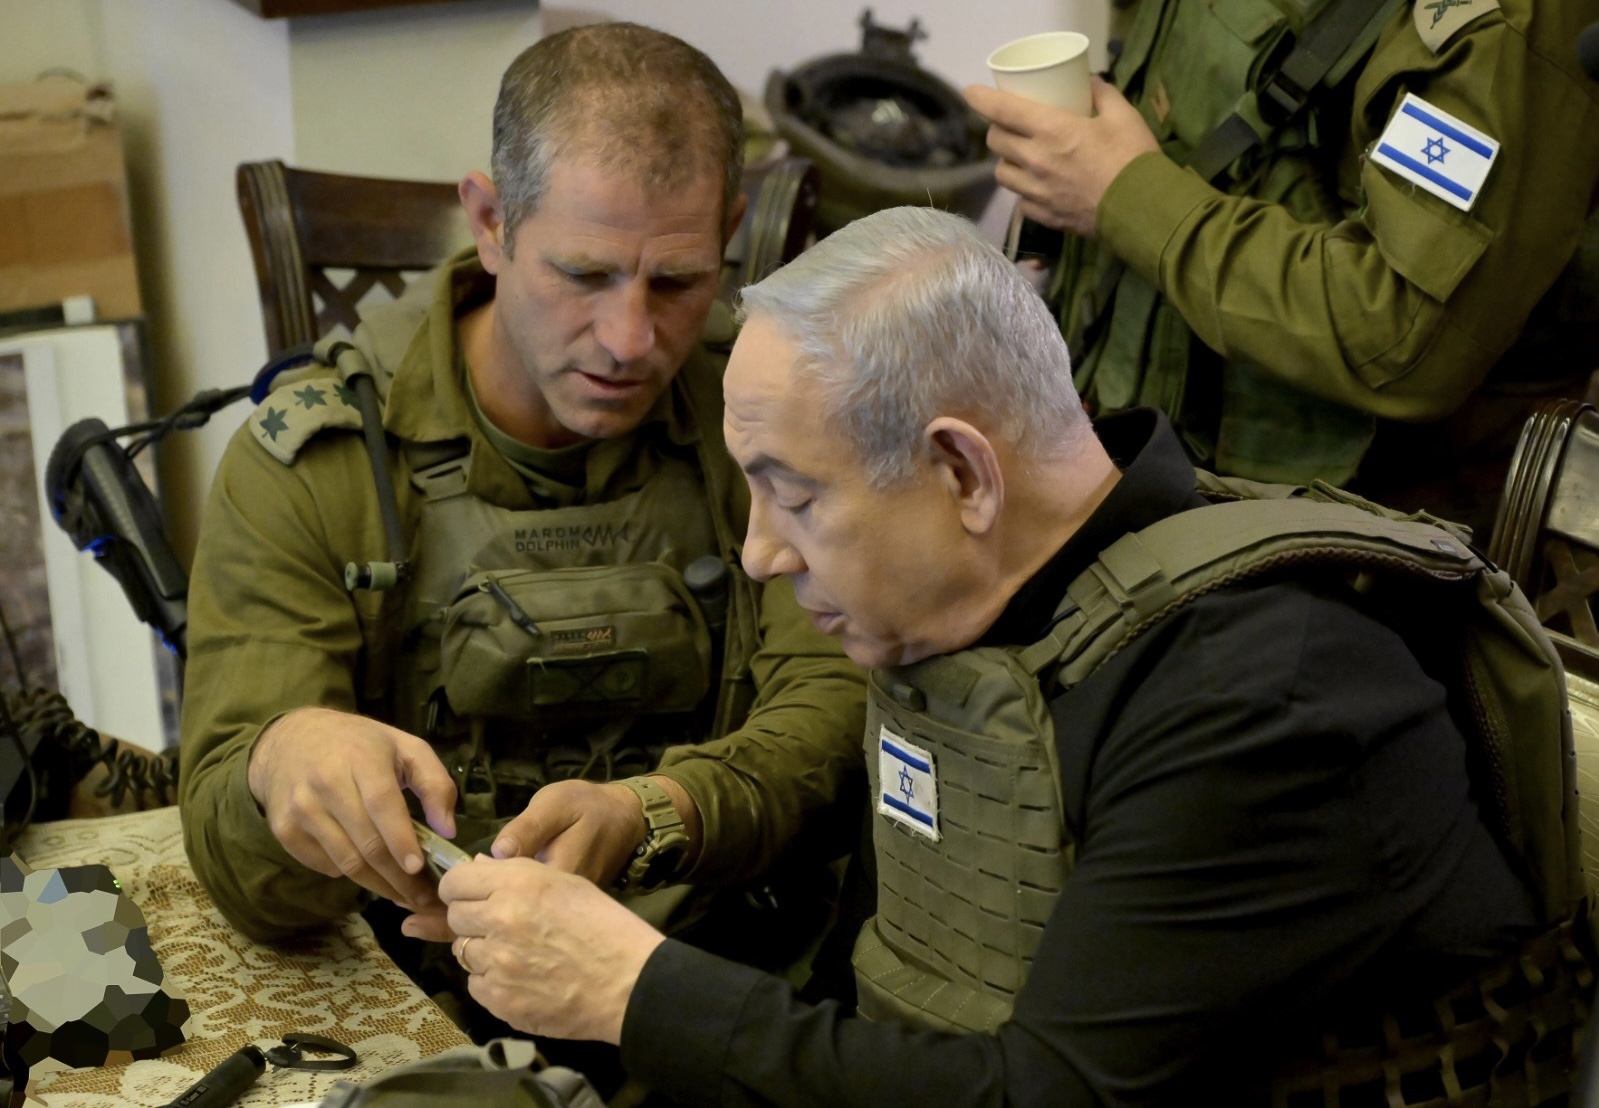 EEUU teme que Netanyahu expanda deliberadamente la guerra en Gaza como herramienta de supervivencia política